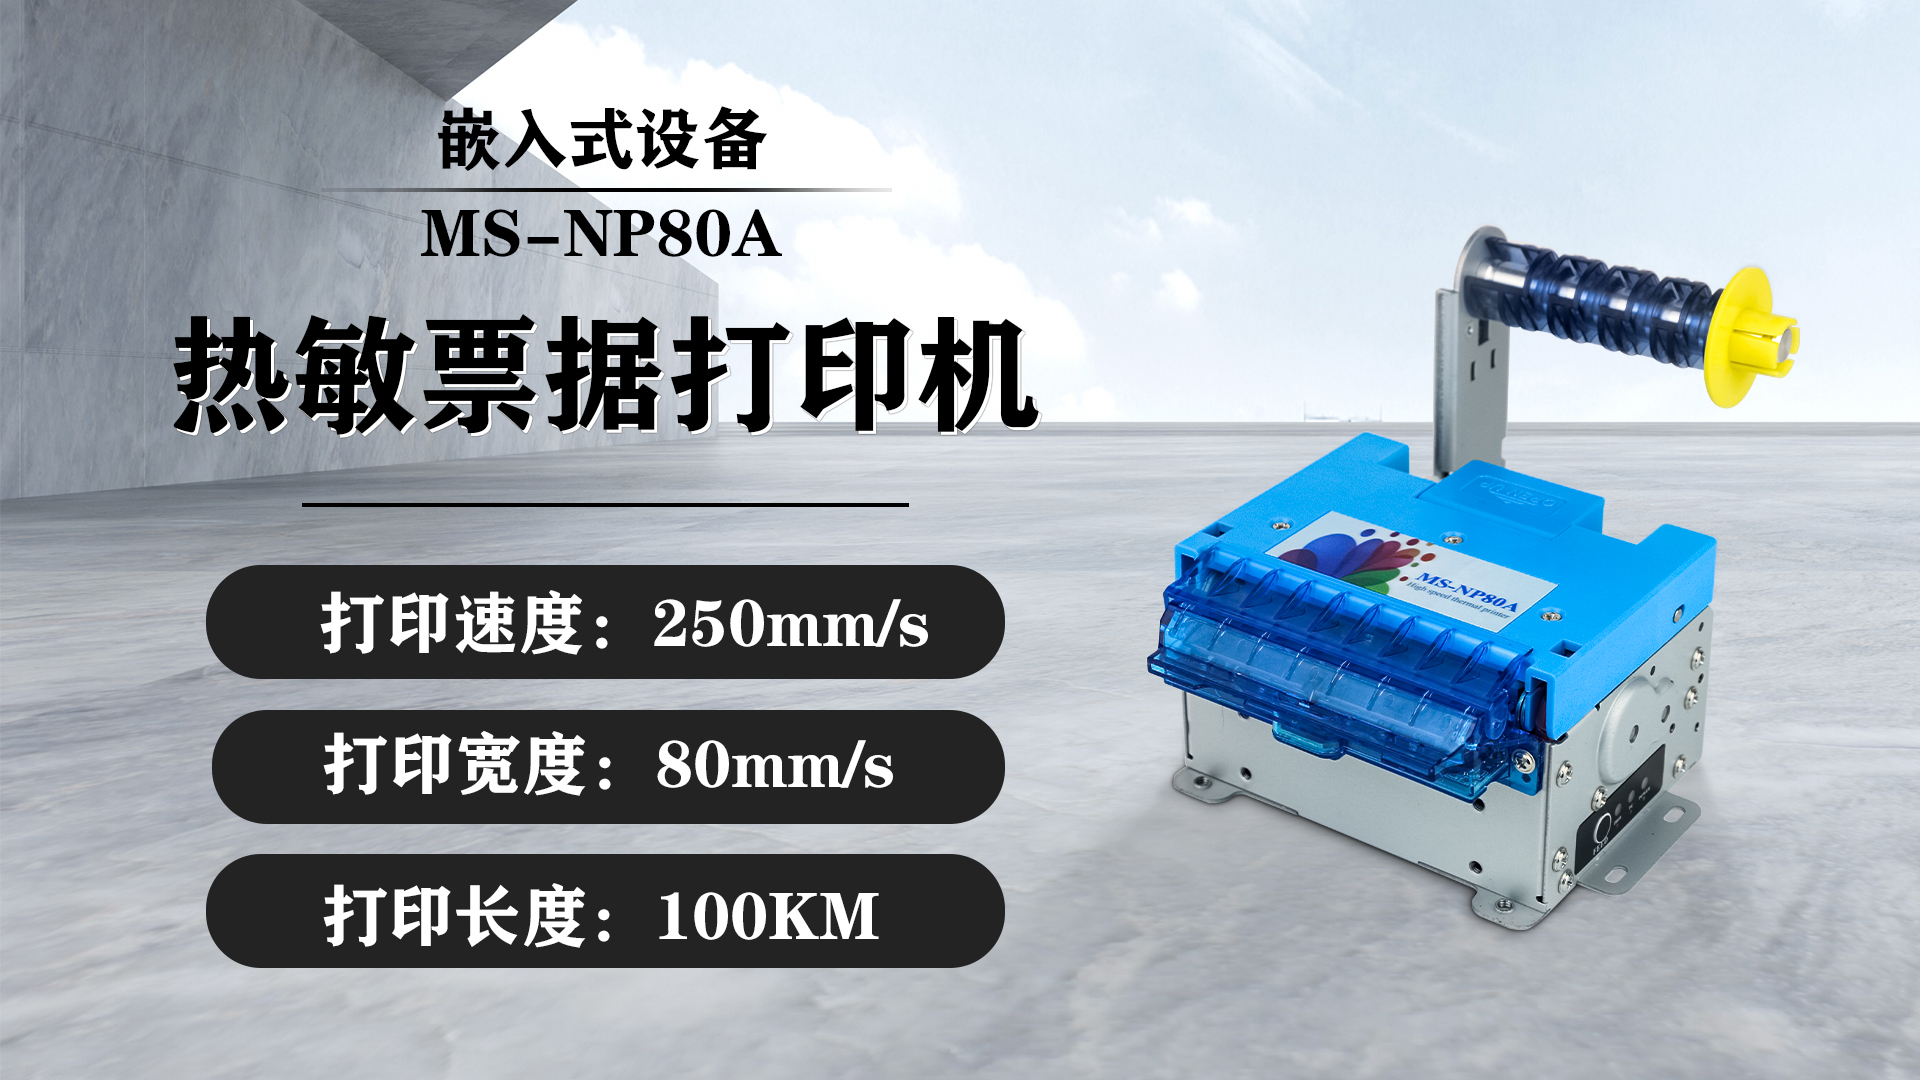 美松80mm嵌入式热敏打印机MS-NP80A在机场自助设备的应用